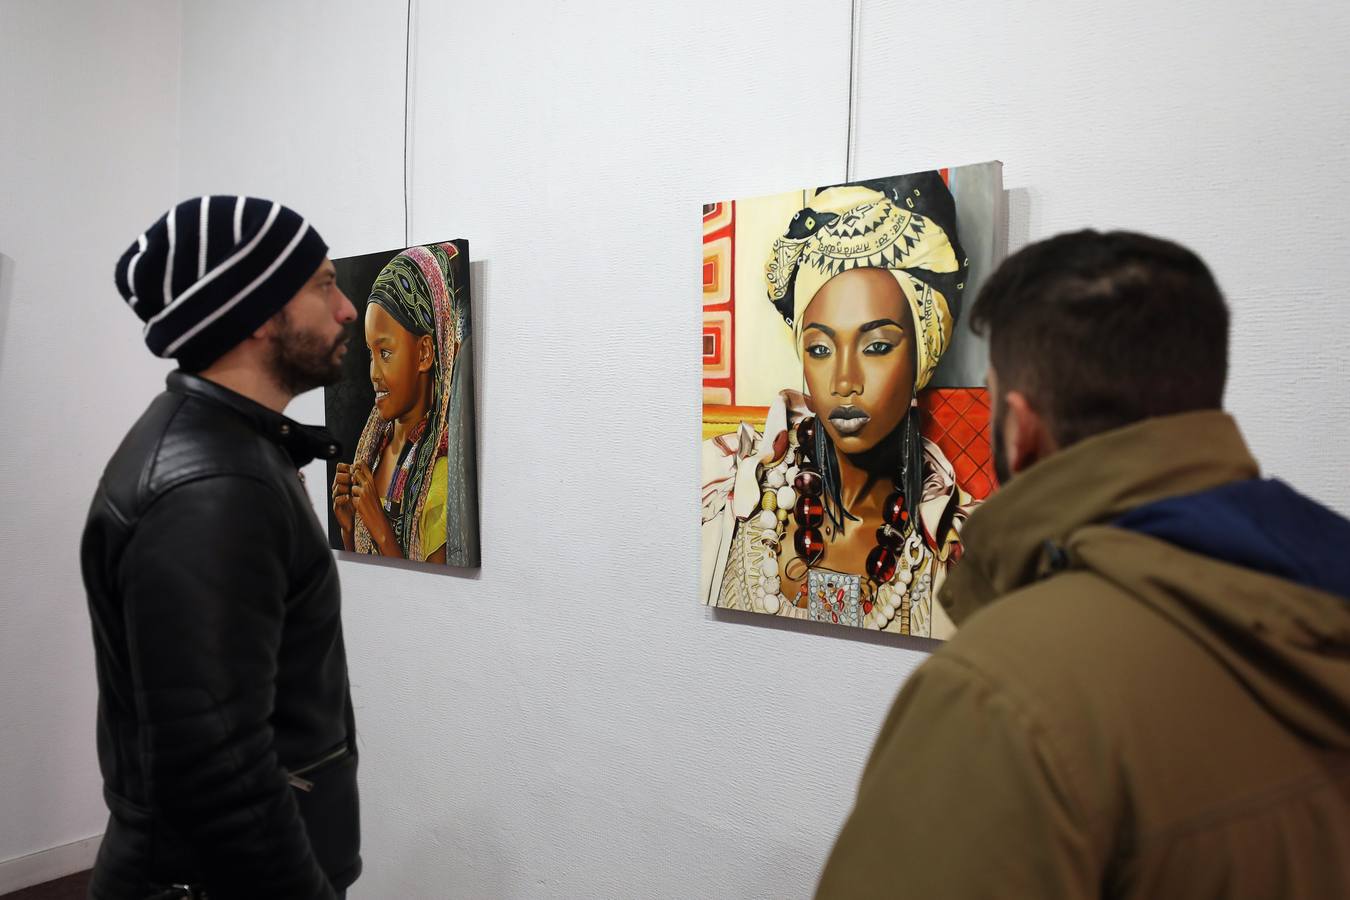 Del 8 al 31 de enero, el Centro Cultural Santo Domingo de Mérida acogerá la exposición 'Miradas del mundo' de la artista Lali Casillas Salcedo. Exposición de pintura, cuadros en óleo, bolígrafo bic y grafito.